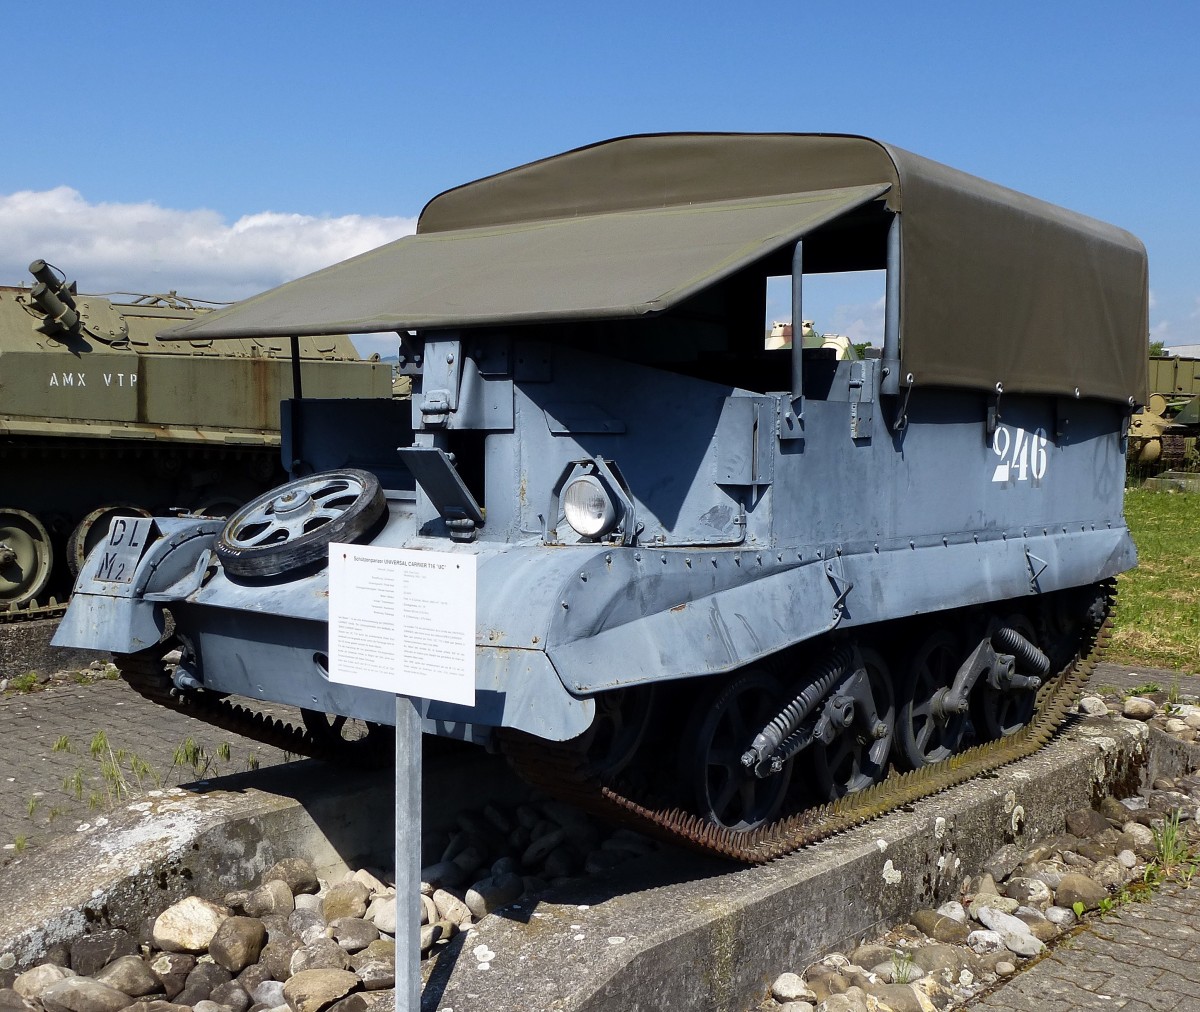 Schtzenpanzer Universal Carrier T16 UC, von 1943-45 in den USA gebaut, 100PS, Vmax.53Km/h, befrderte 6 Infanteristen, die Schweizer Armee verwendete von 1950-65 300 Fahrzeuge, Panzermuseum Thun, Mai 2015